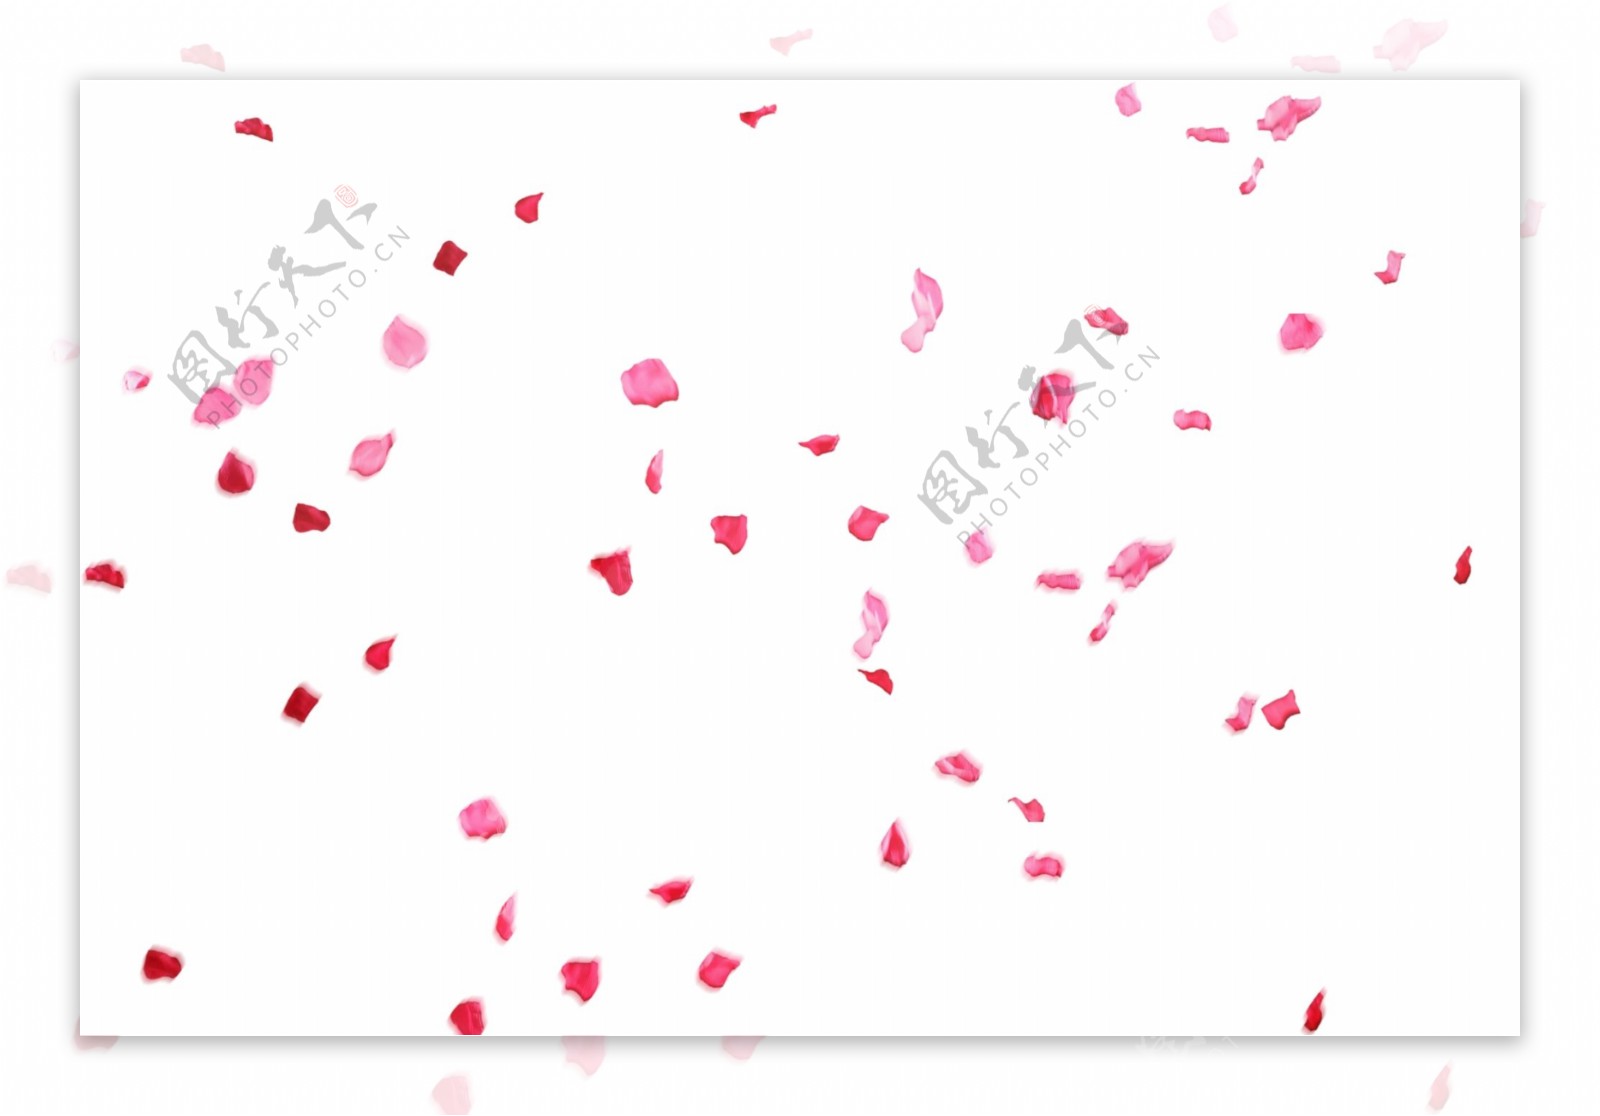 漂亮玫瑰花瓣PSD图片